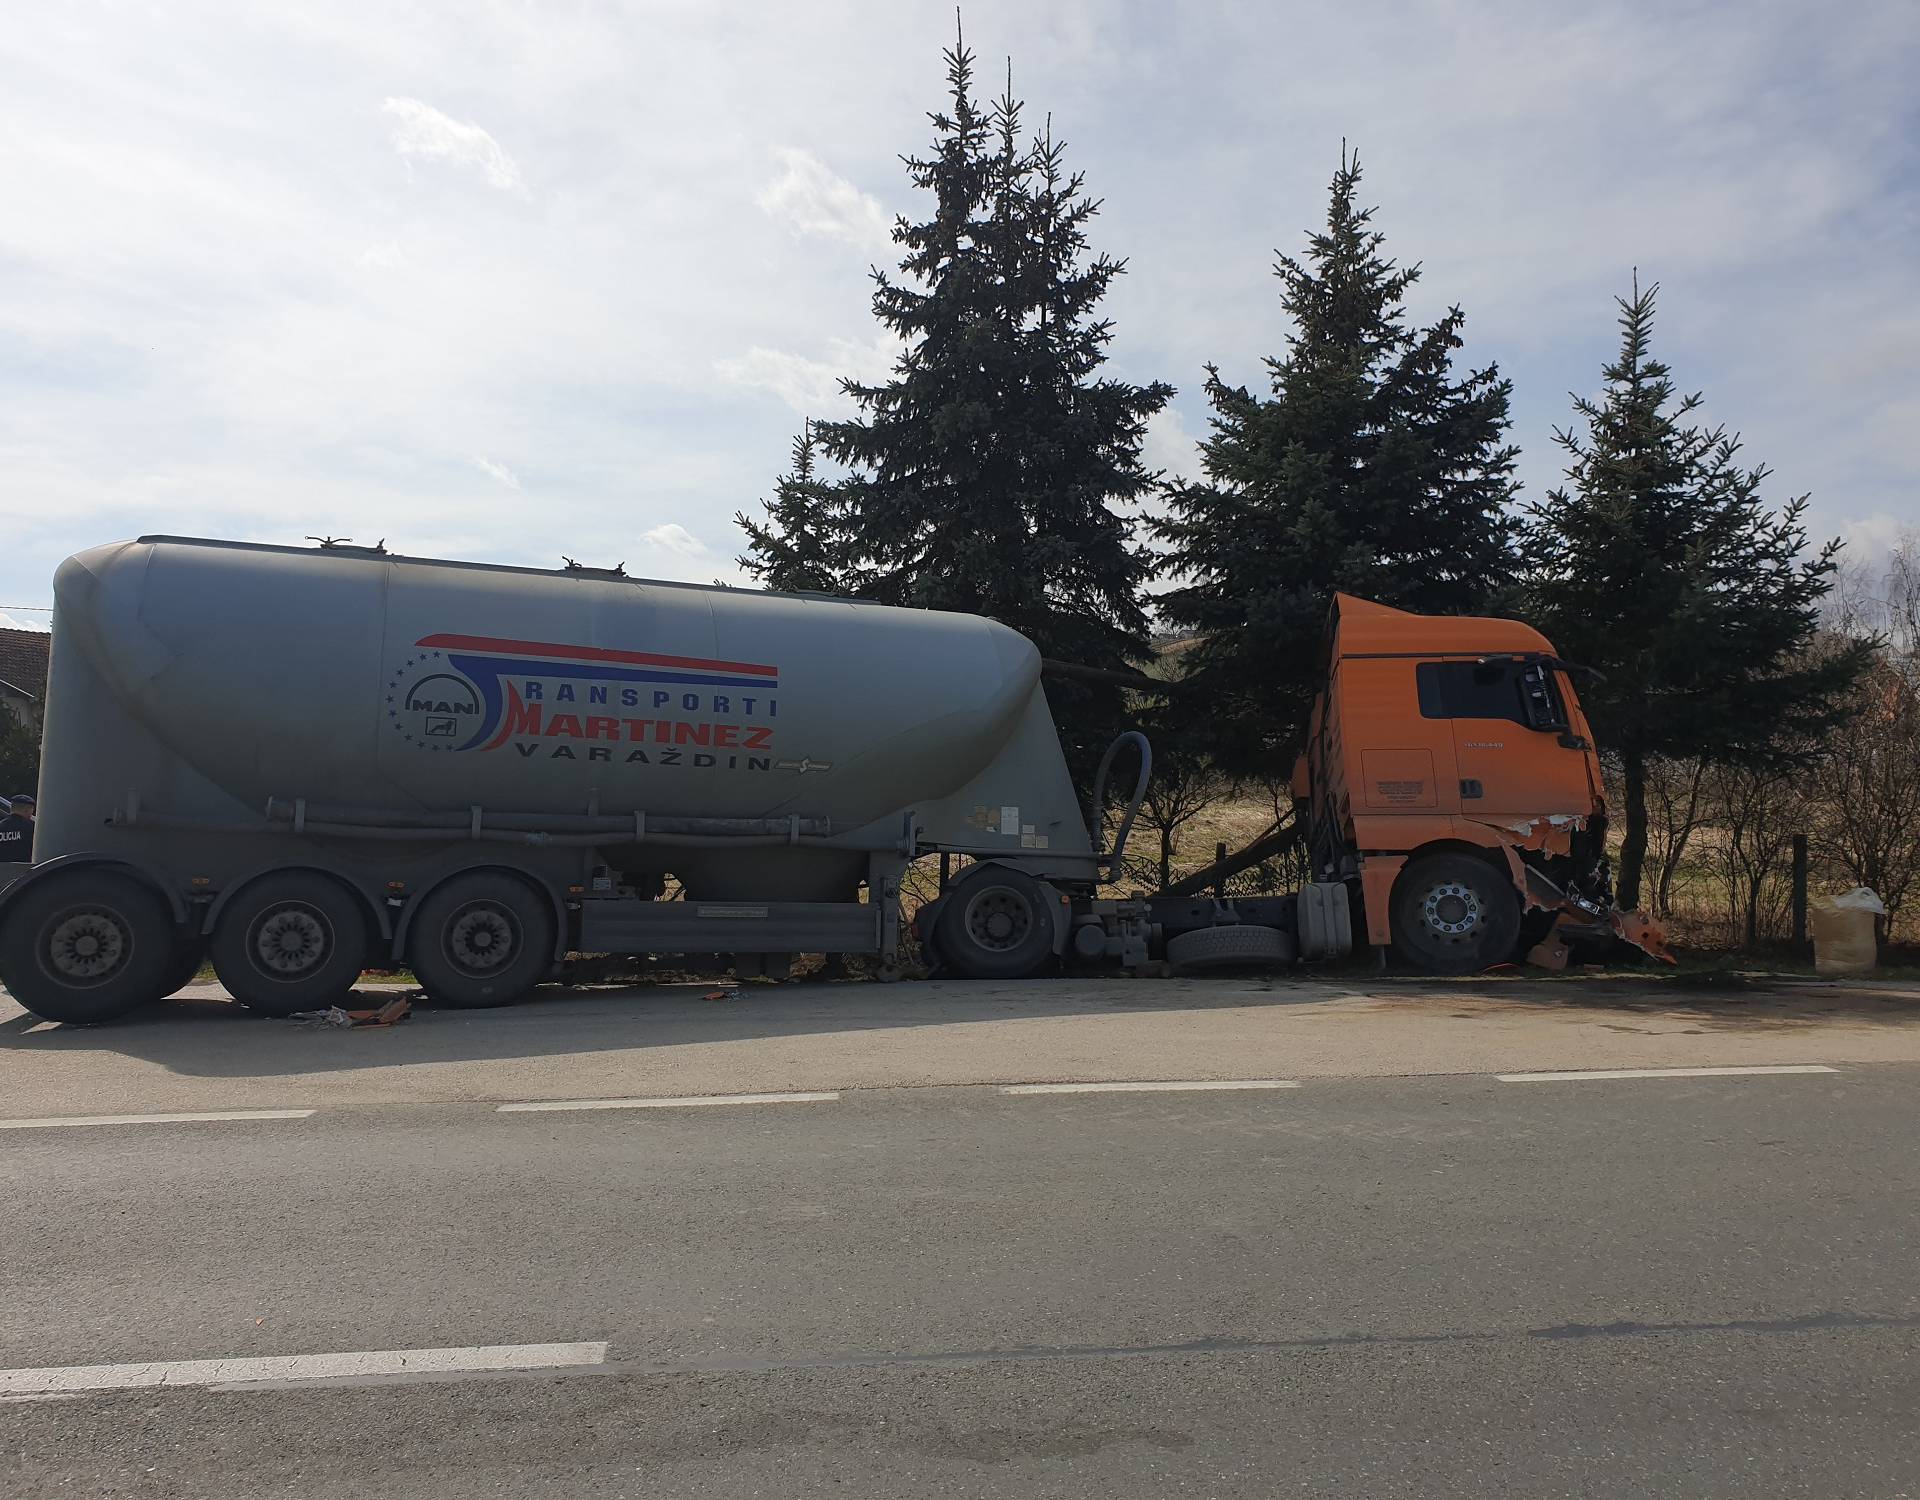 U naletu kamiona na traktor kod Koprivnice ozlijeđena žena